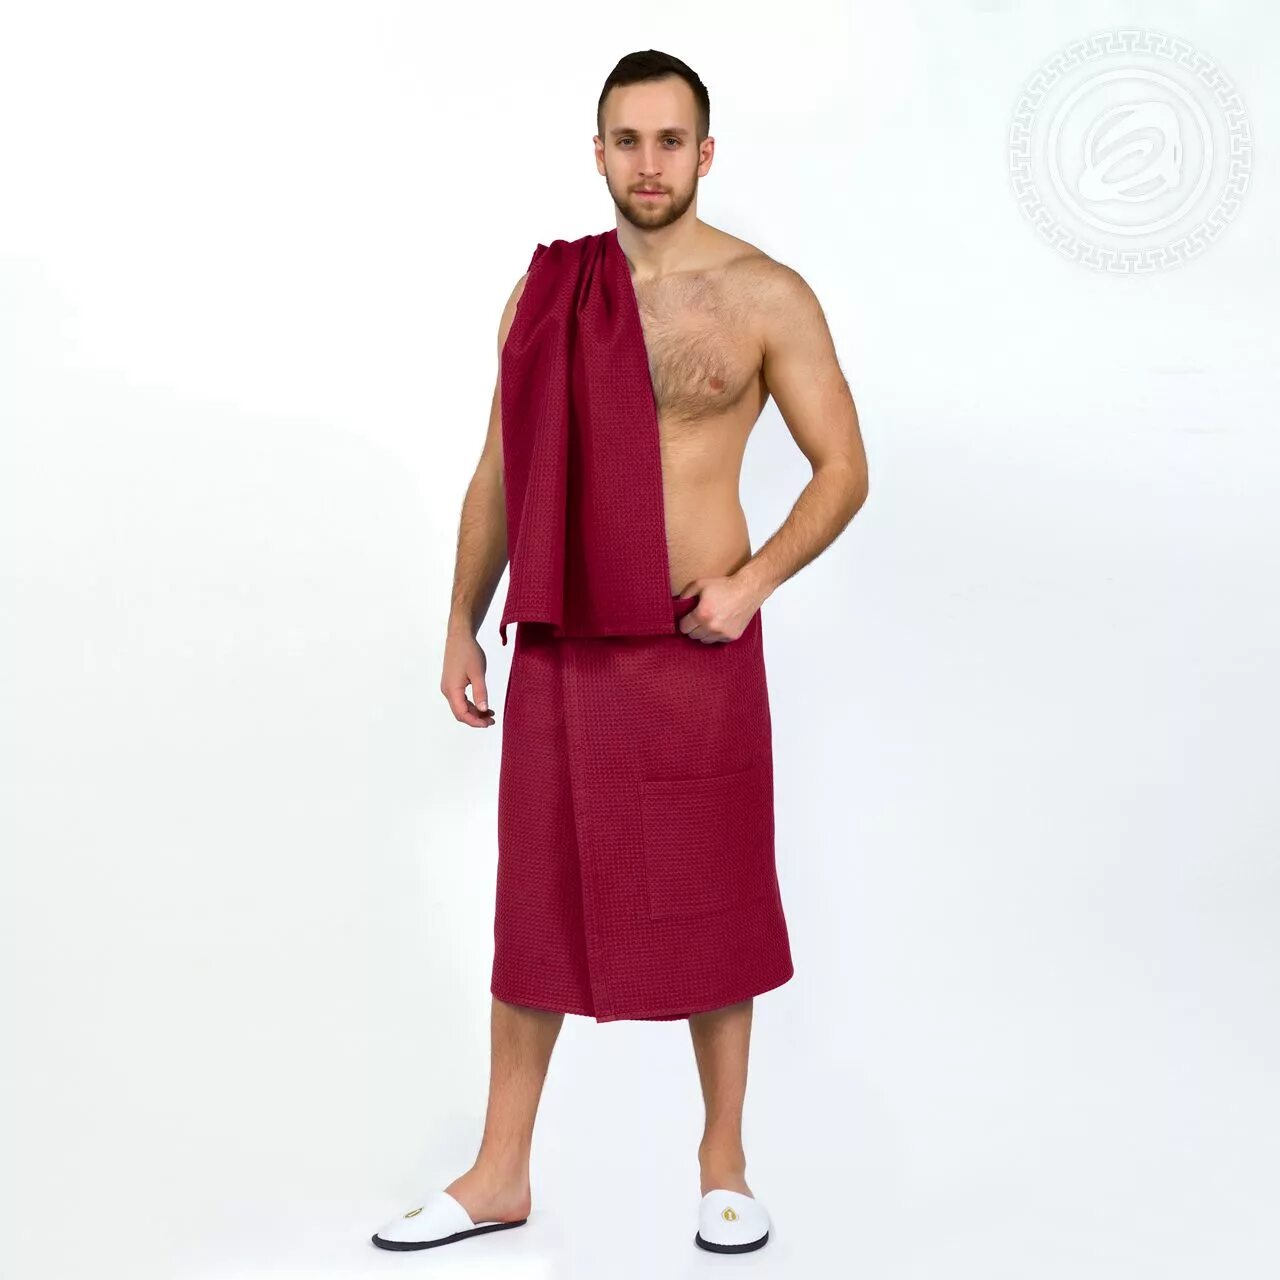 Мужские банные полотенца. Набор для сауны мужской велюровый Karna Koral - синий-(Саксен). Набор для сауны мужской килт полотенце серый. Полотенце для бани мужское. Банное полотенце на липучке для мужчин.